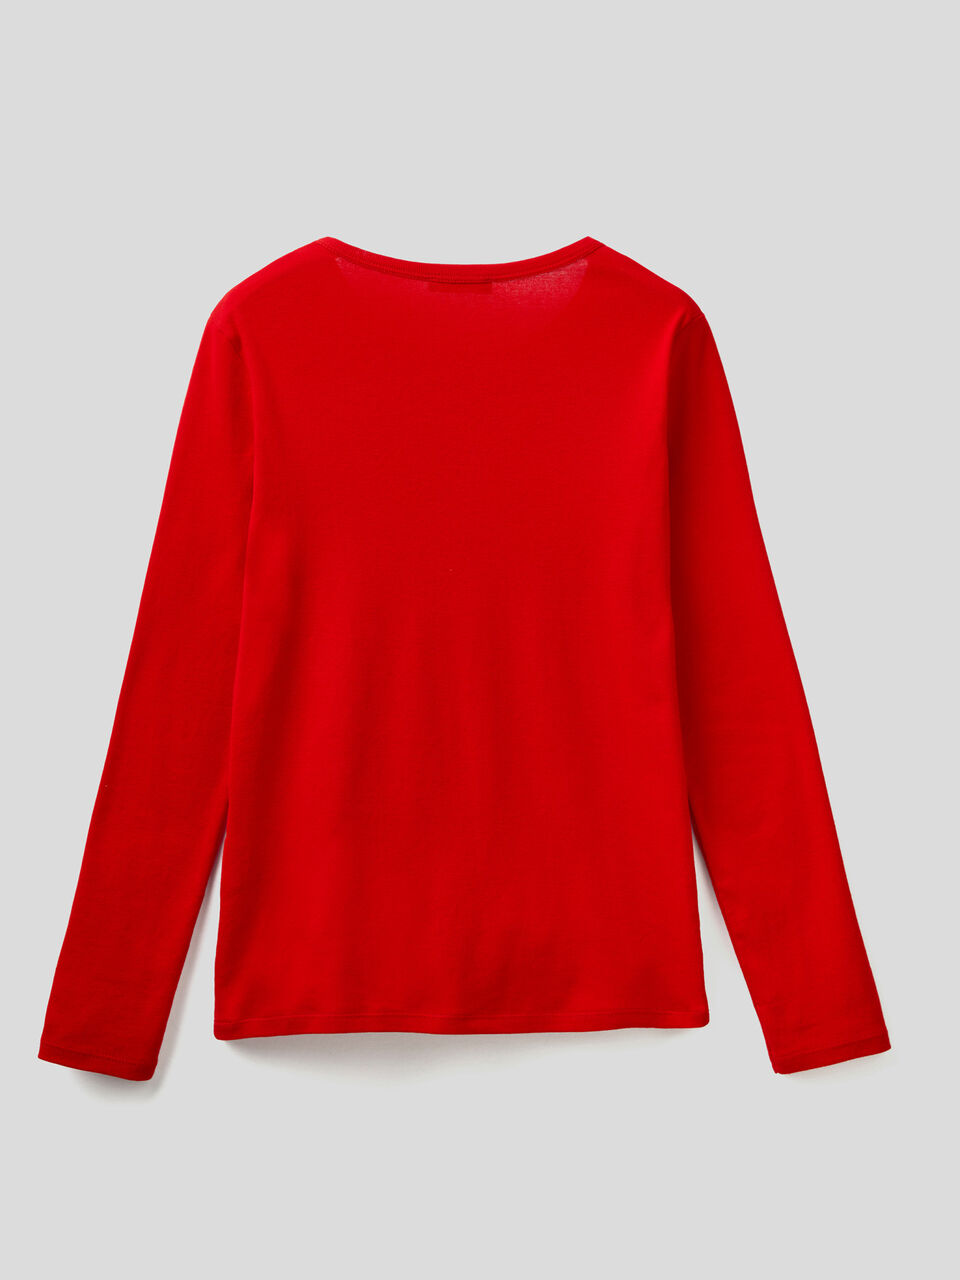 Camiseta roja de manga larga de 100 % algodón - Rojo